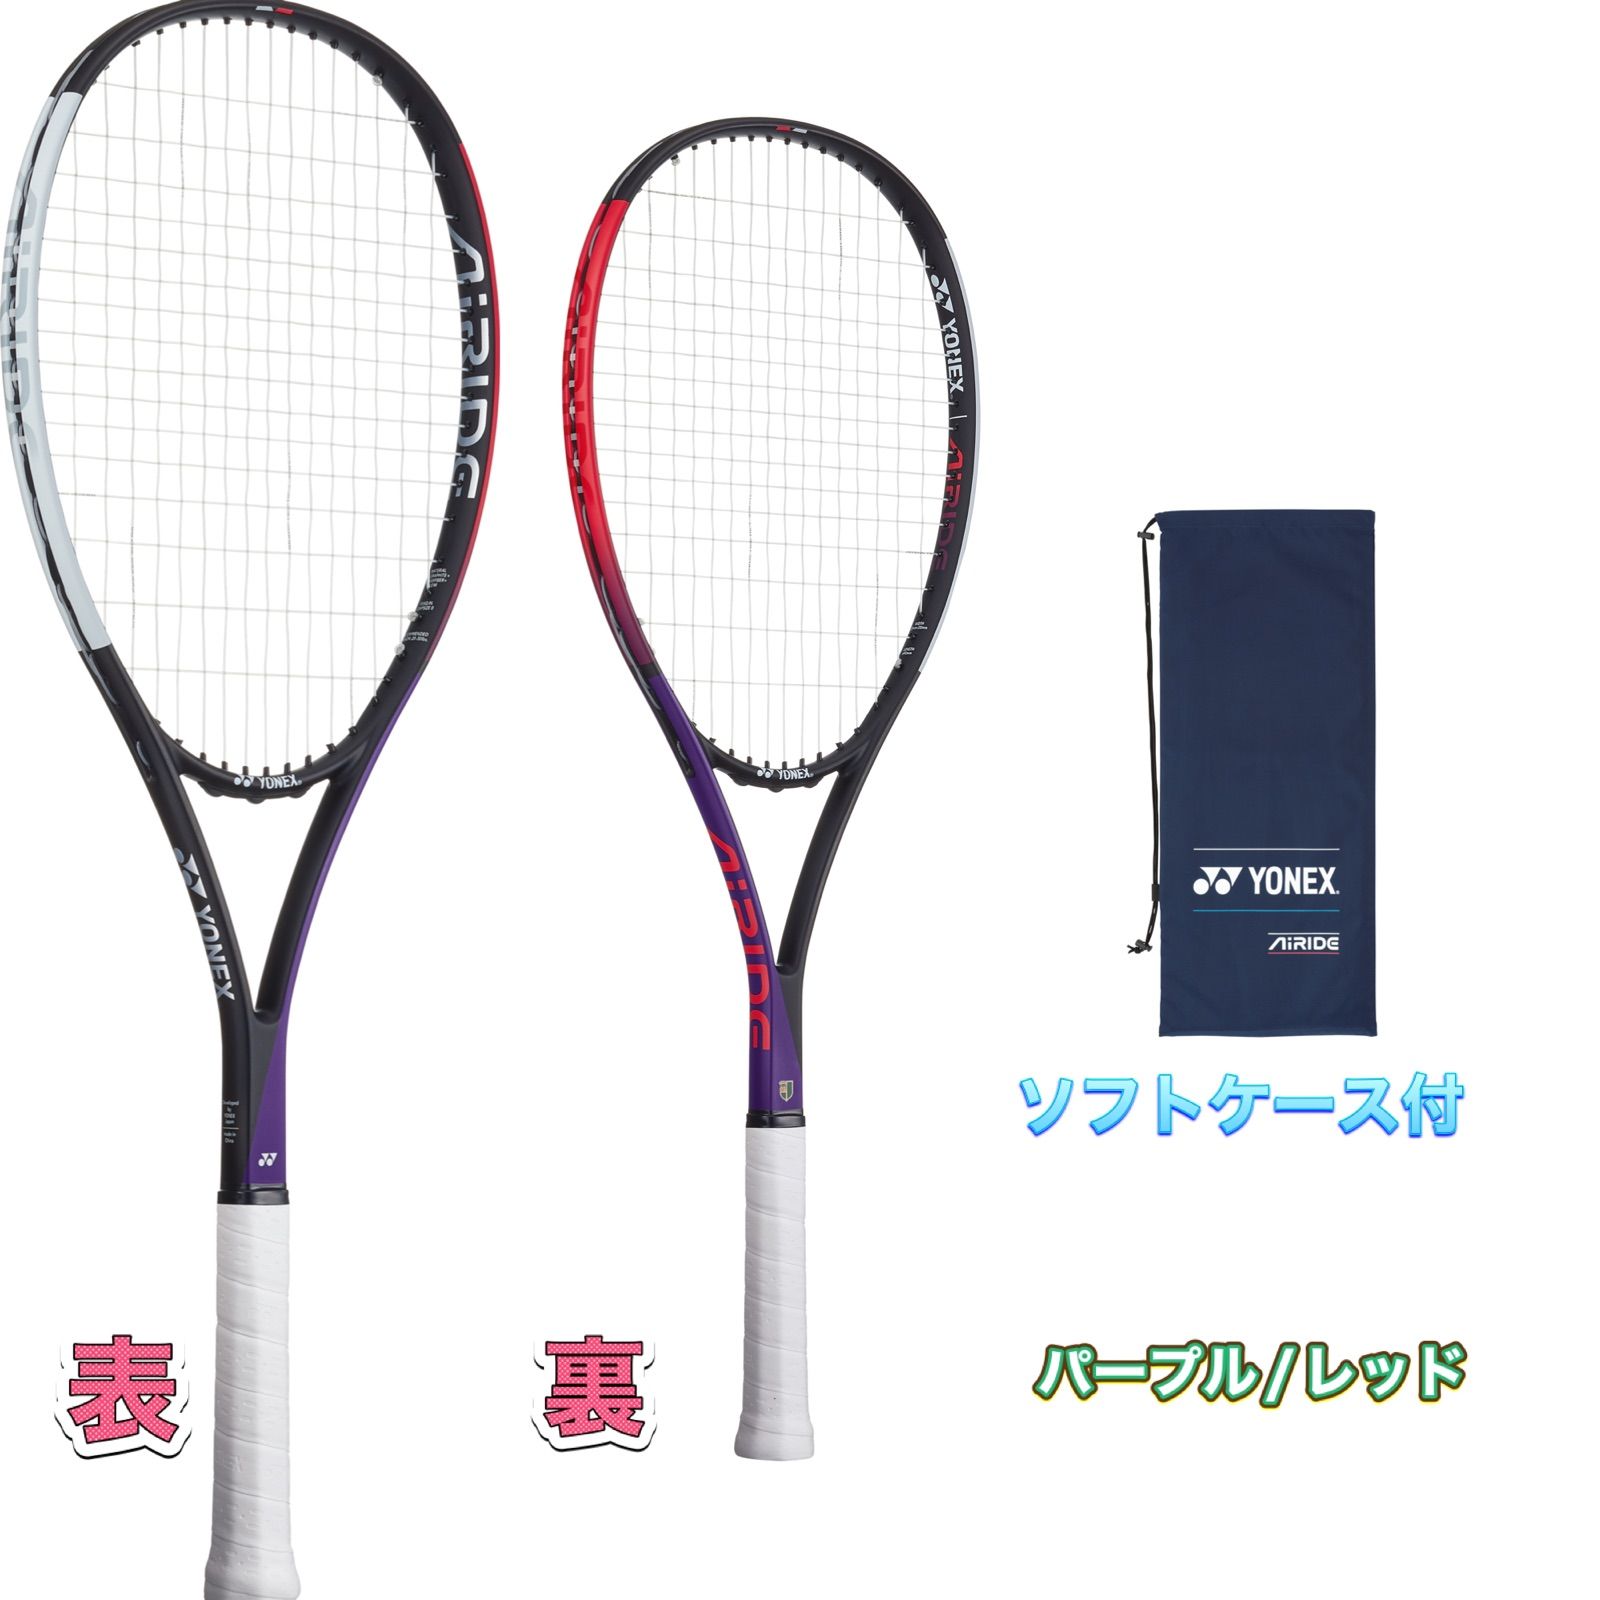 メルカリShops - YONEX ソフトテニス ラケット 新品